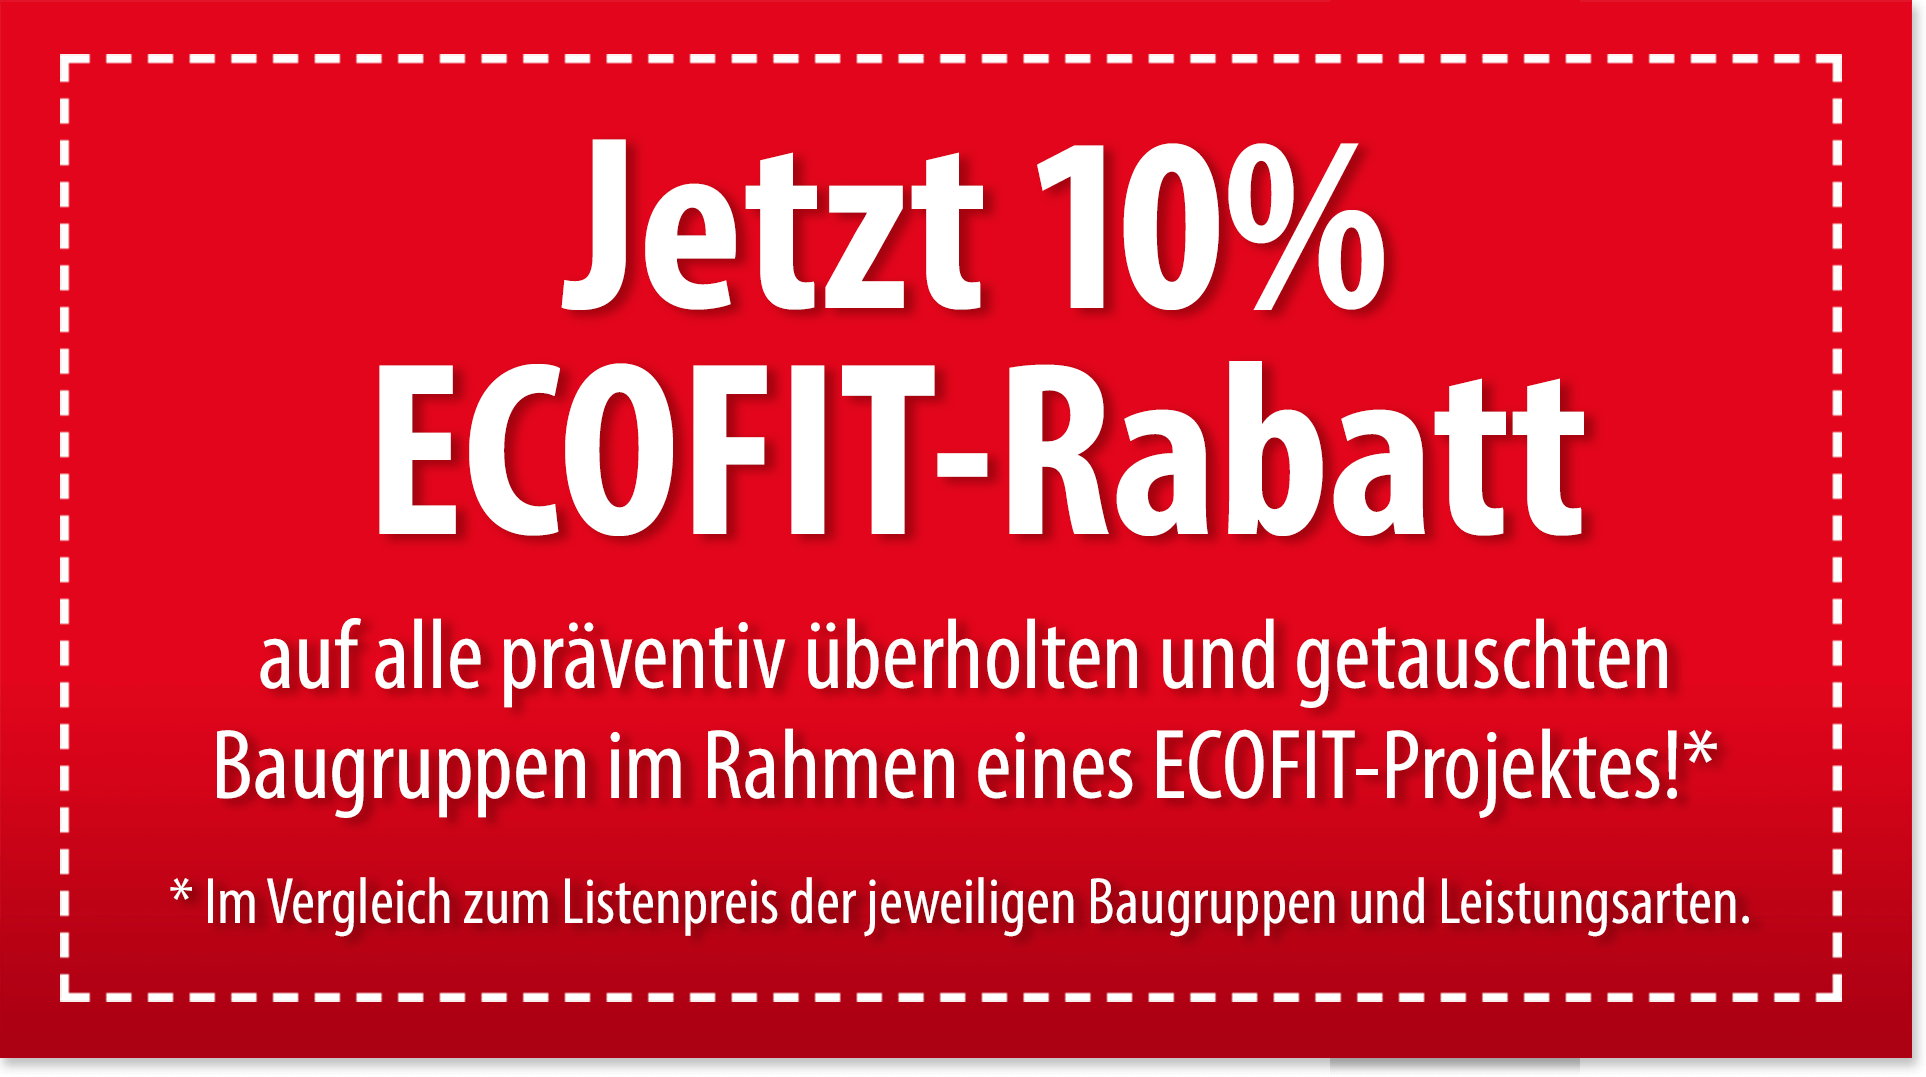 10% Ecofit discount